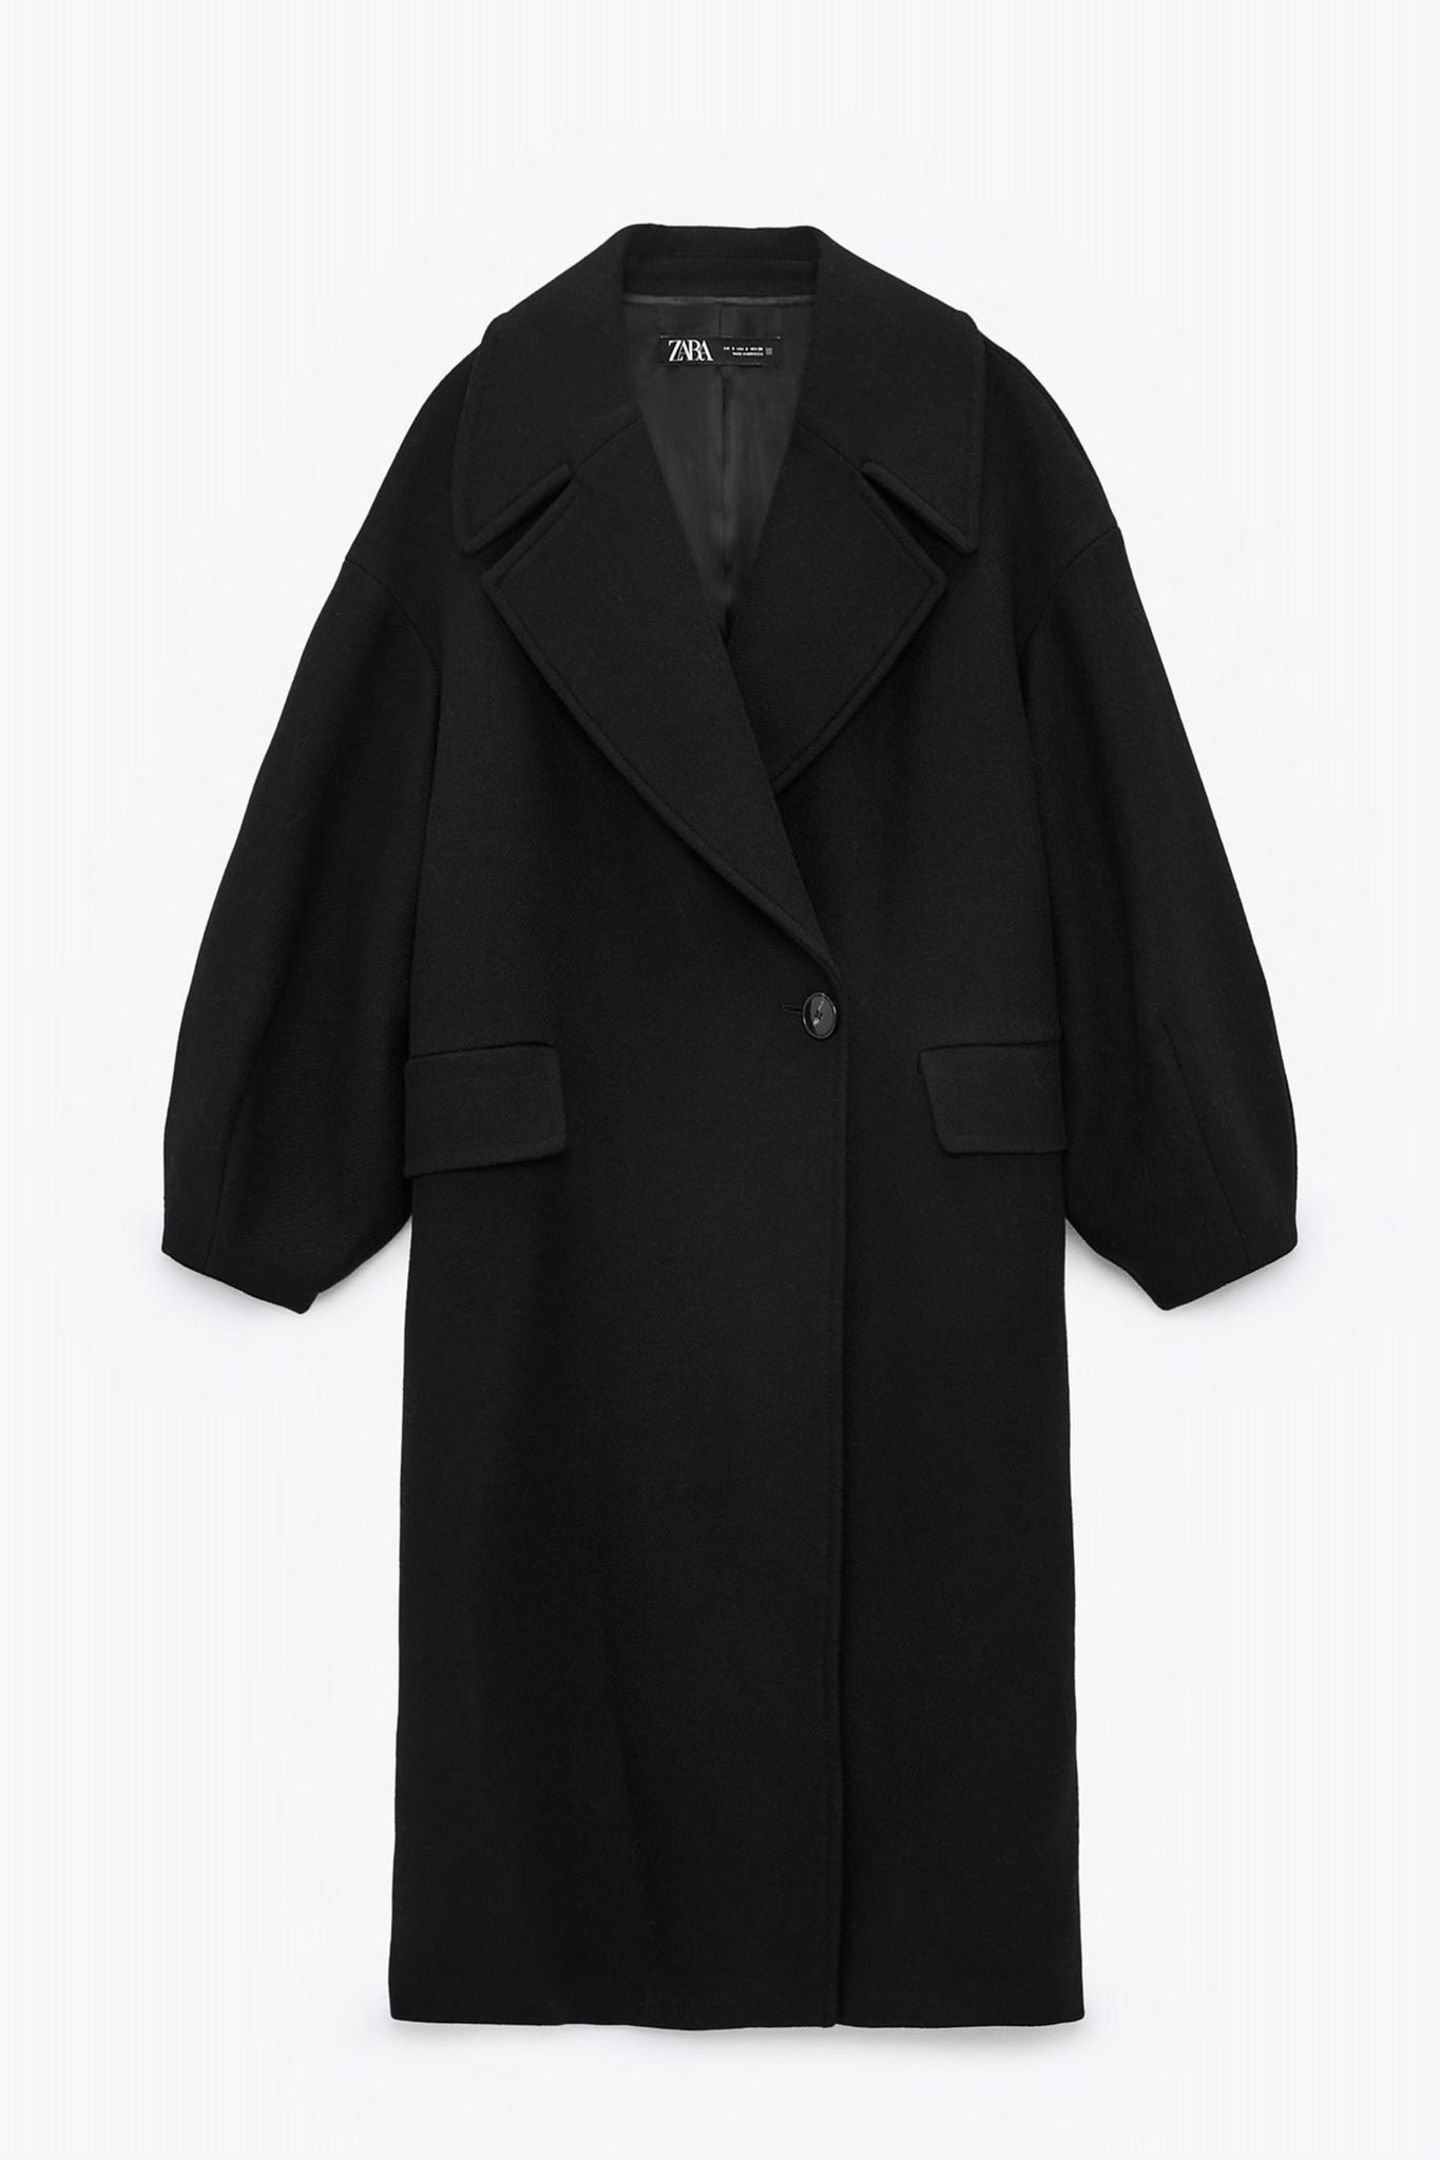 Herbstmäntel unter 100 Euro: Schwarzer Mantel von Zara